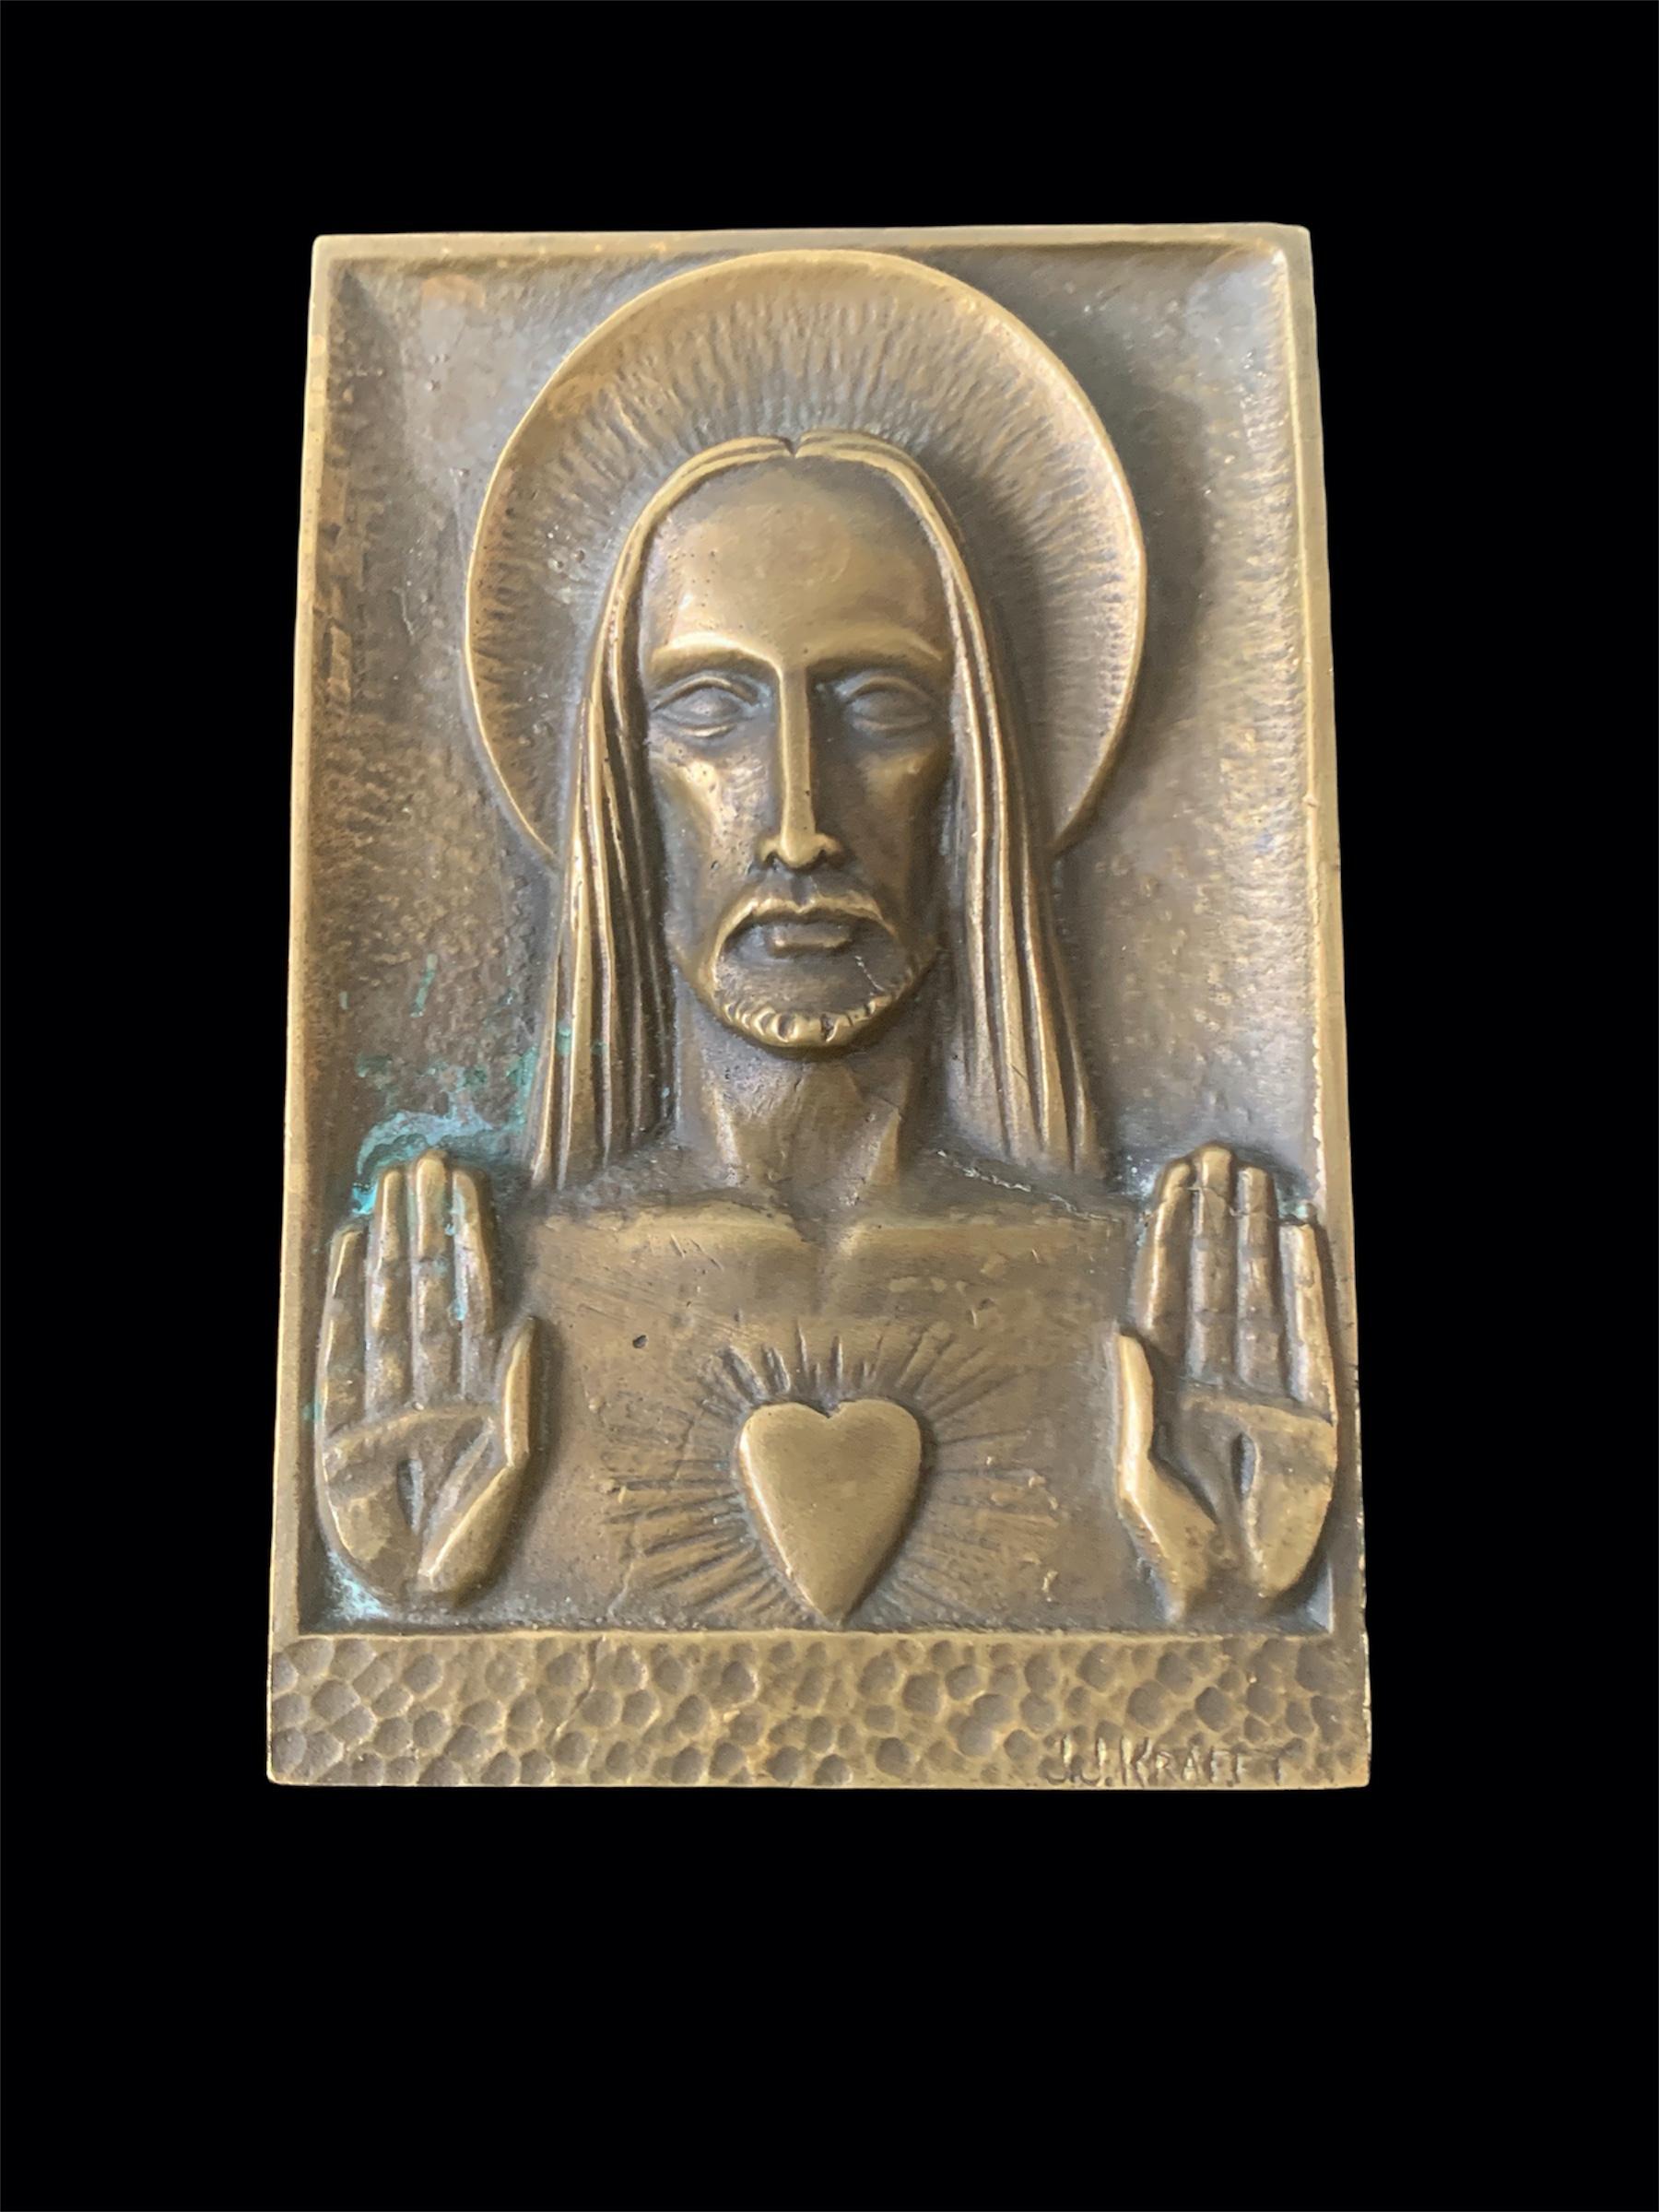 Bronzeplakette von französischem Designer
Jeans-Jacques Kraftt
jesus darstellend
Signiert vom Künstler 
Eloquent
ein kleines Kunstwerk aus Bronze, das an einer Wand angebracht werden kann.